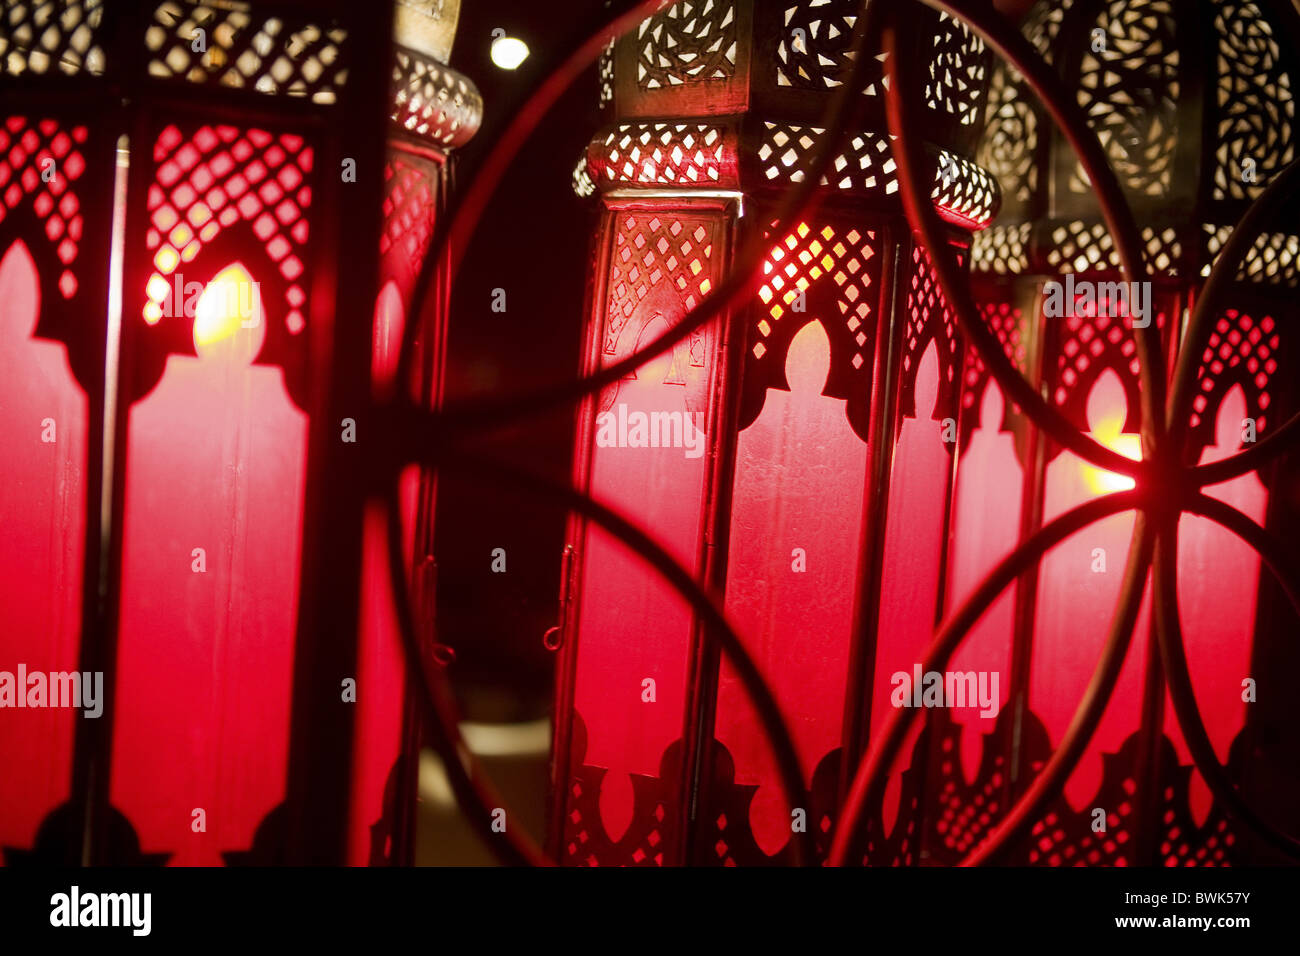 Moroccan lamps at Café Arabe restaurant, Marrakech, Morocco, Africa Stock Photo